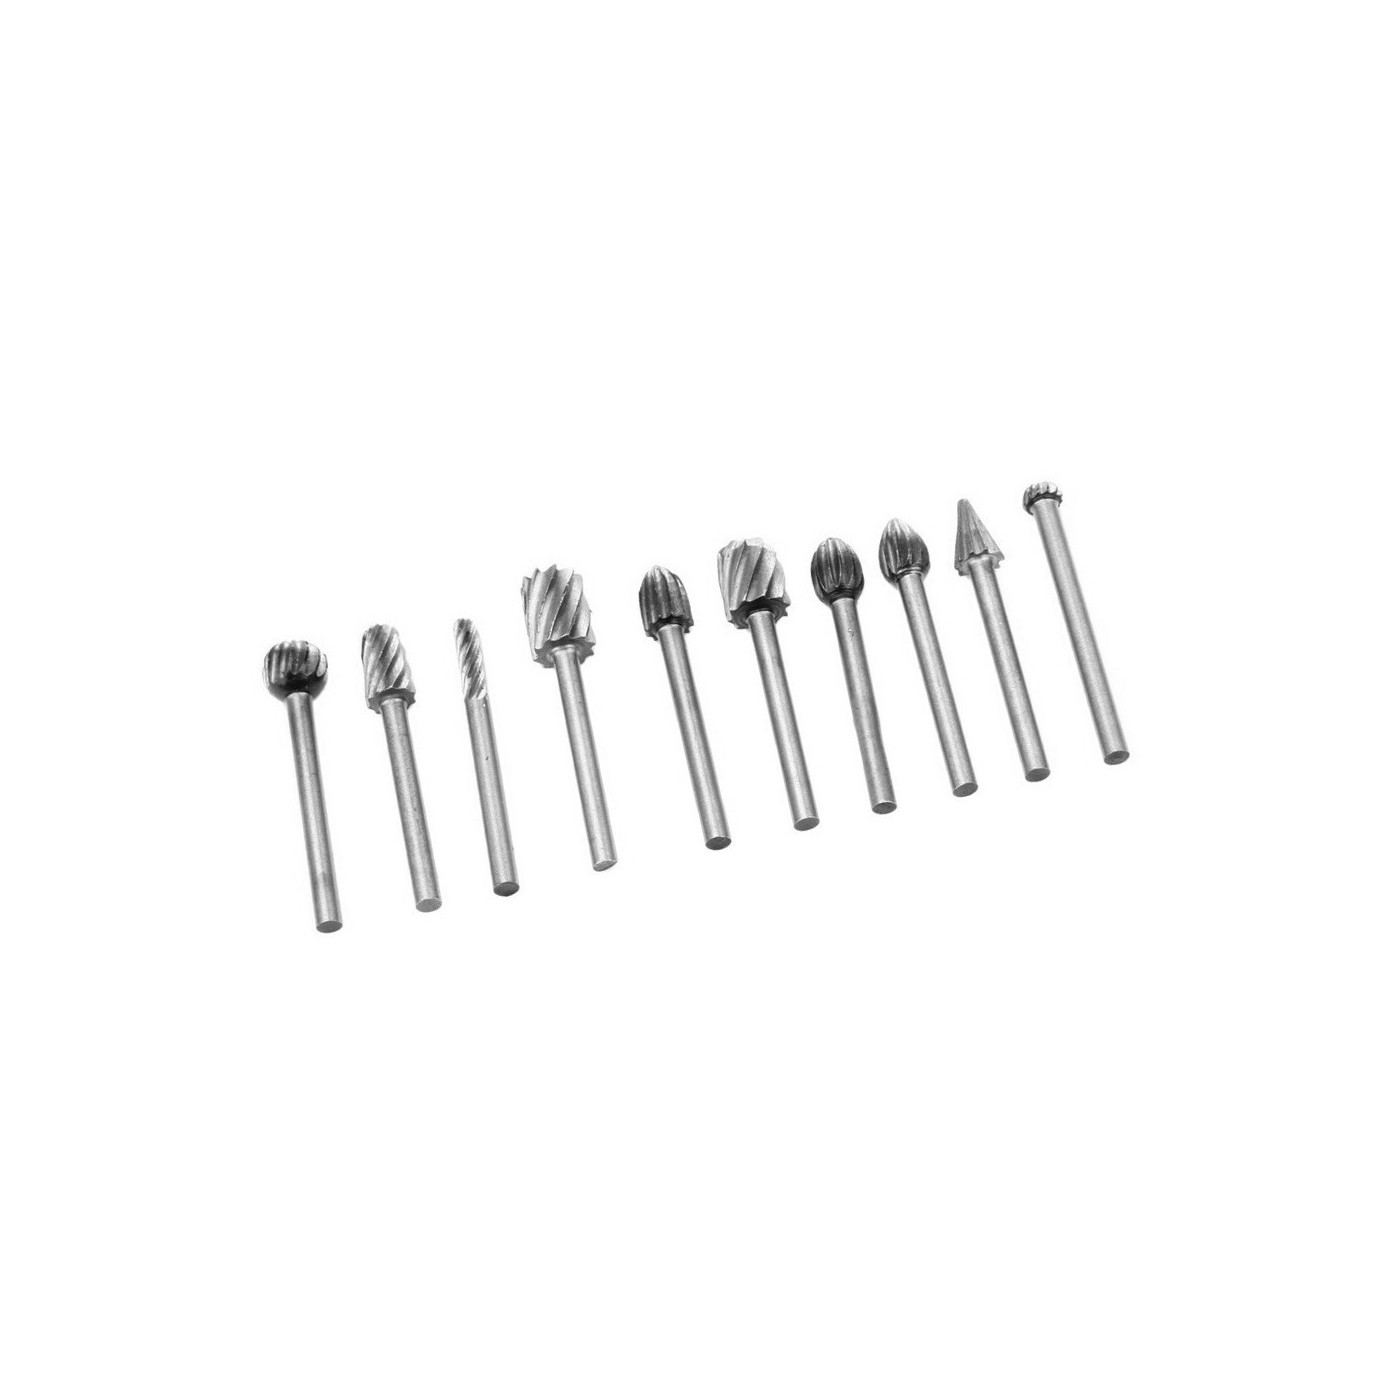 Set of 10 mini HSS milling cutters/burrs (3.175 mm)